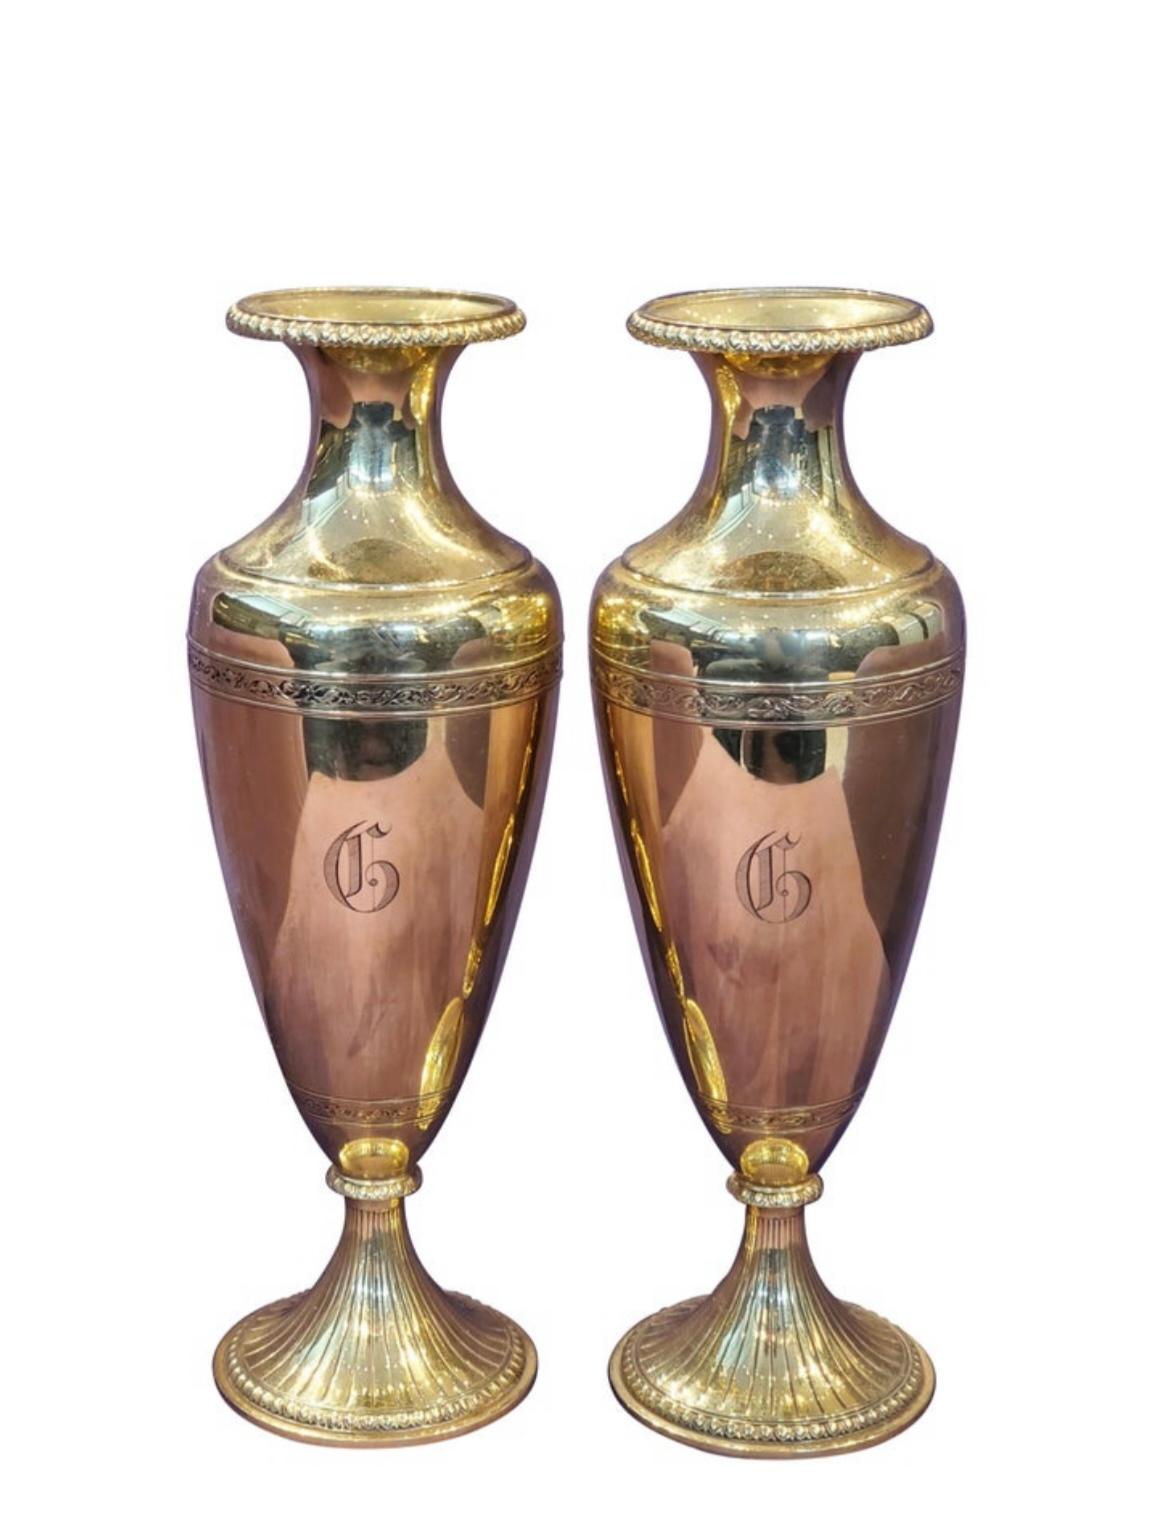 Paire de vases à fleurs en or 14 carats

Dimensions : 
environ 7,82 x 2,75

Poids : 464,1 grammes.
